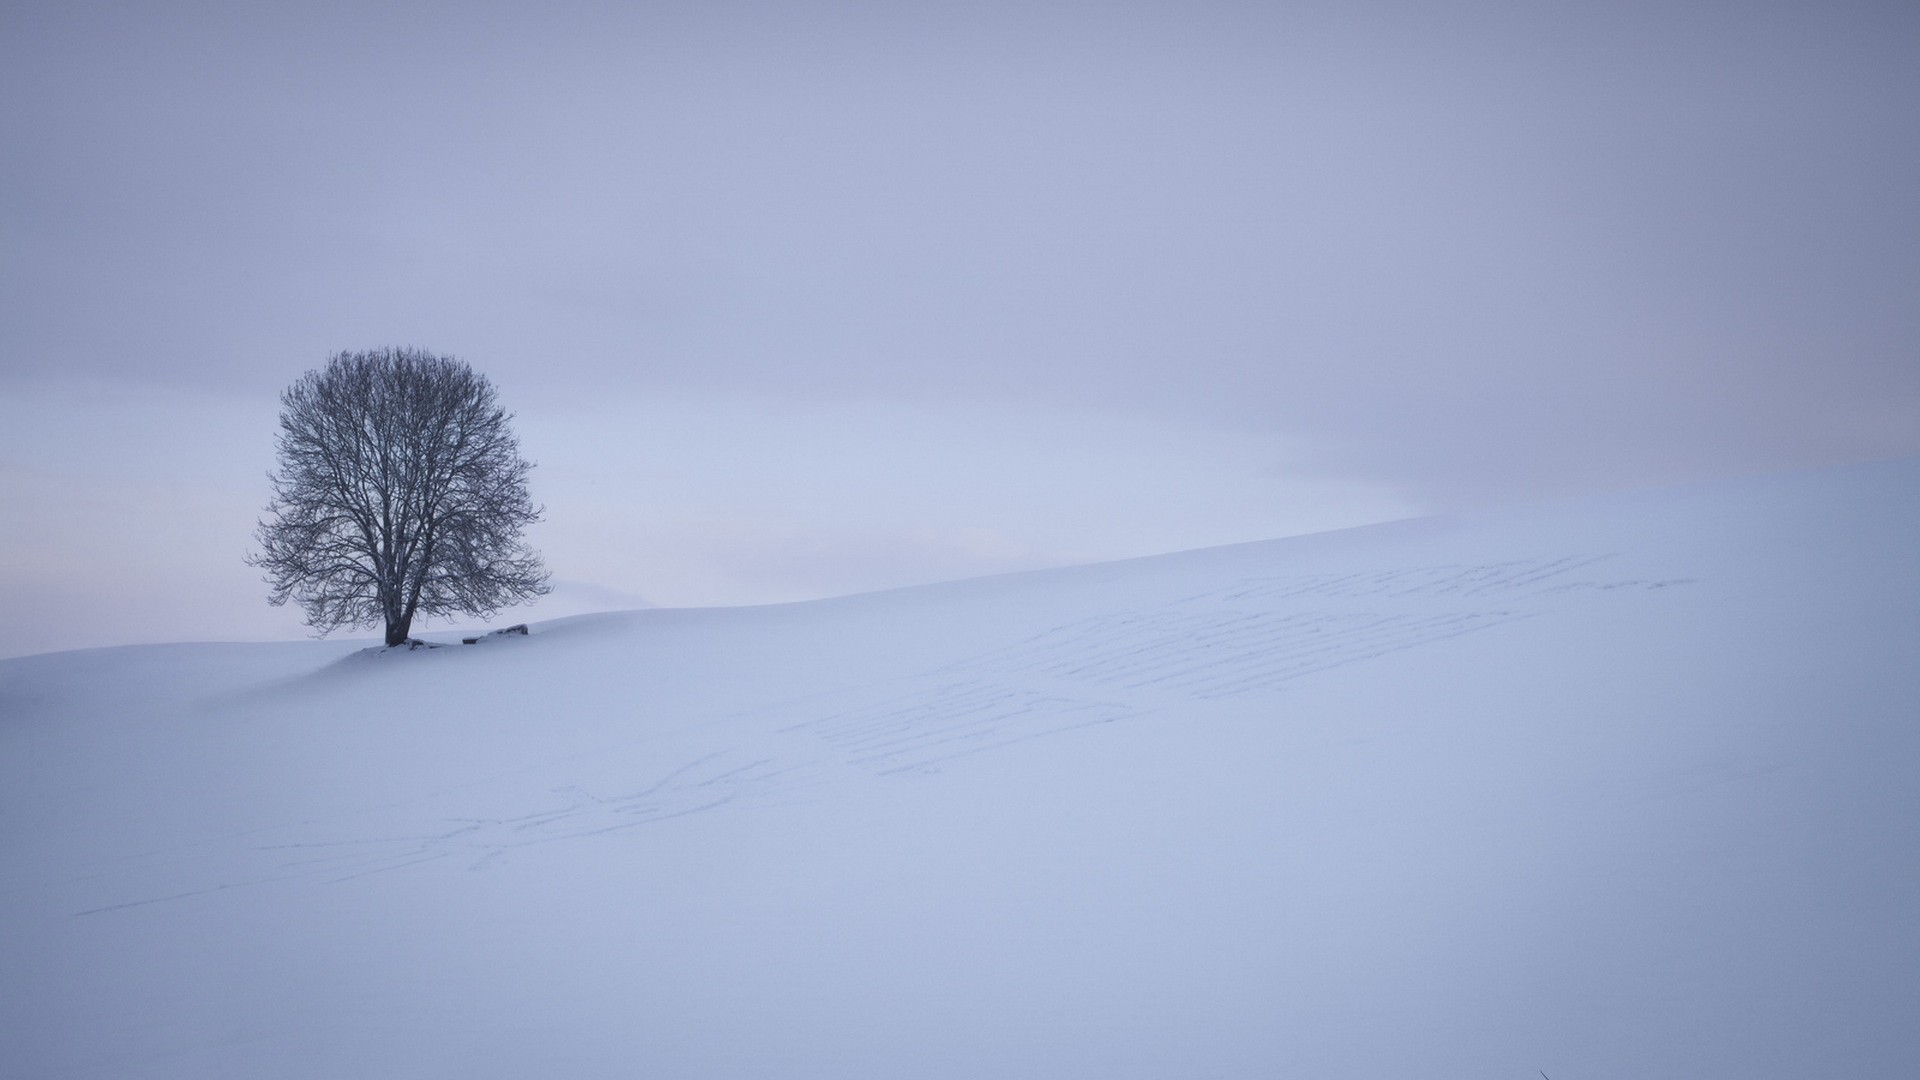 雪,雪地,树,简洁,风景桌面壁纸高清大图预览1920x1080